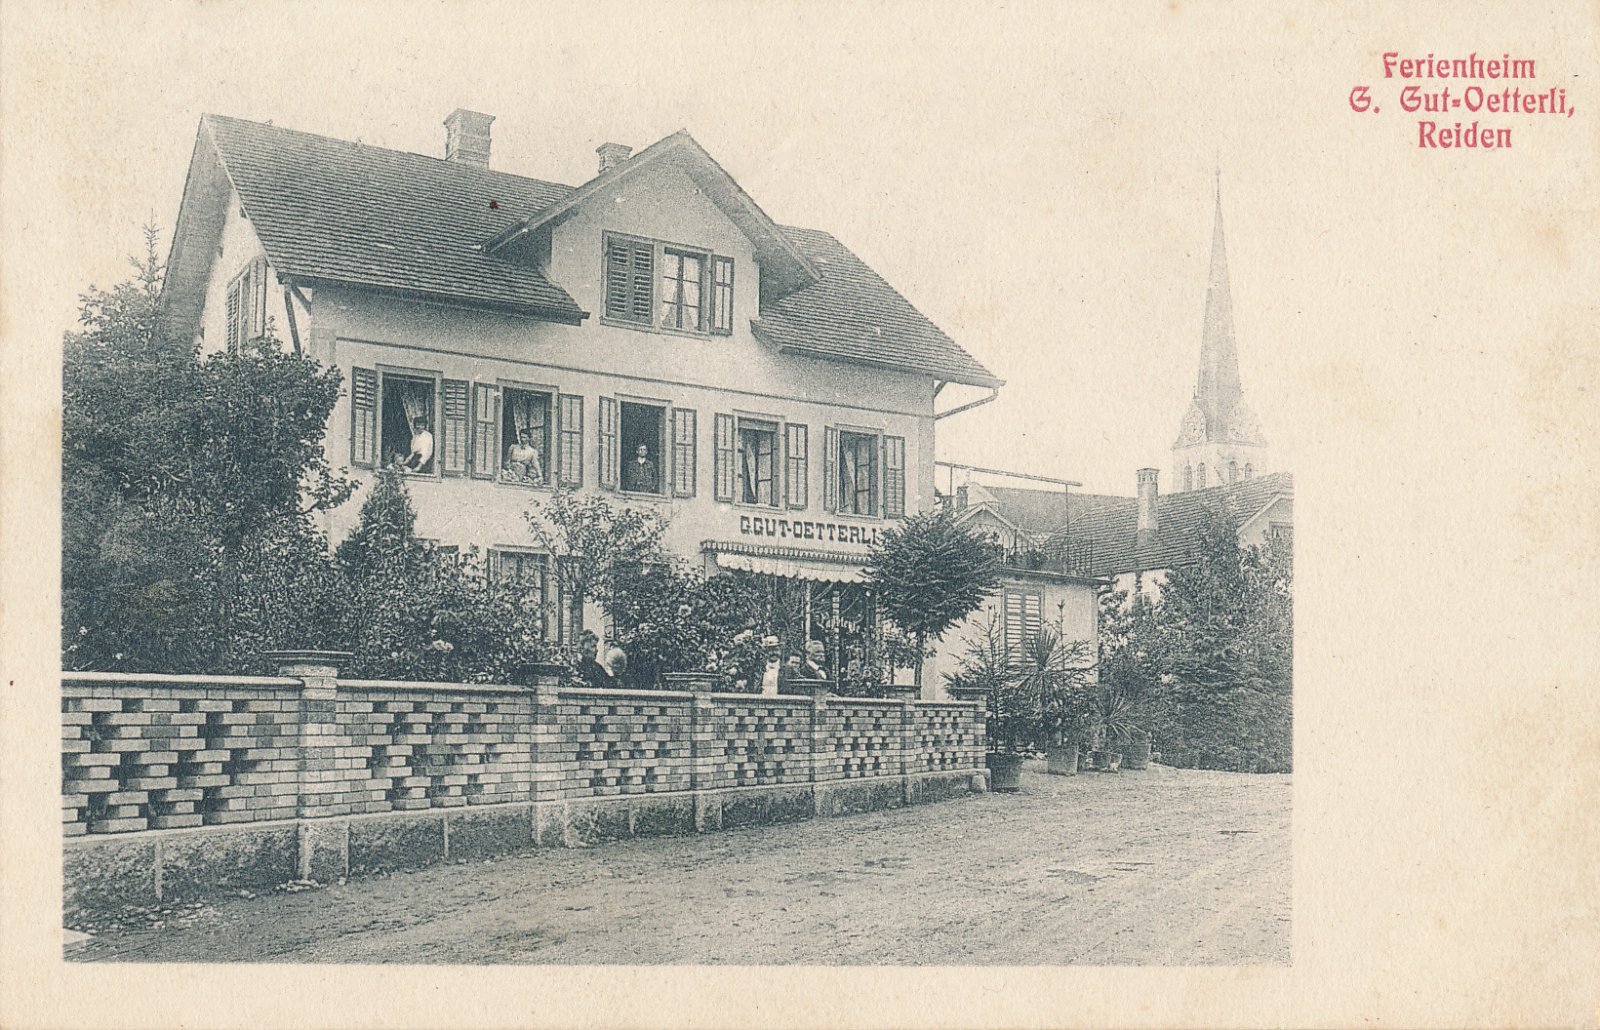 Ferienheim Gut-Oetterli 1911 